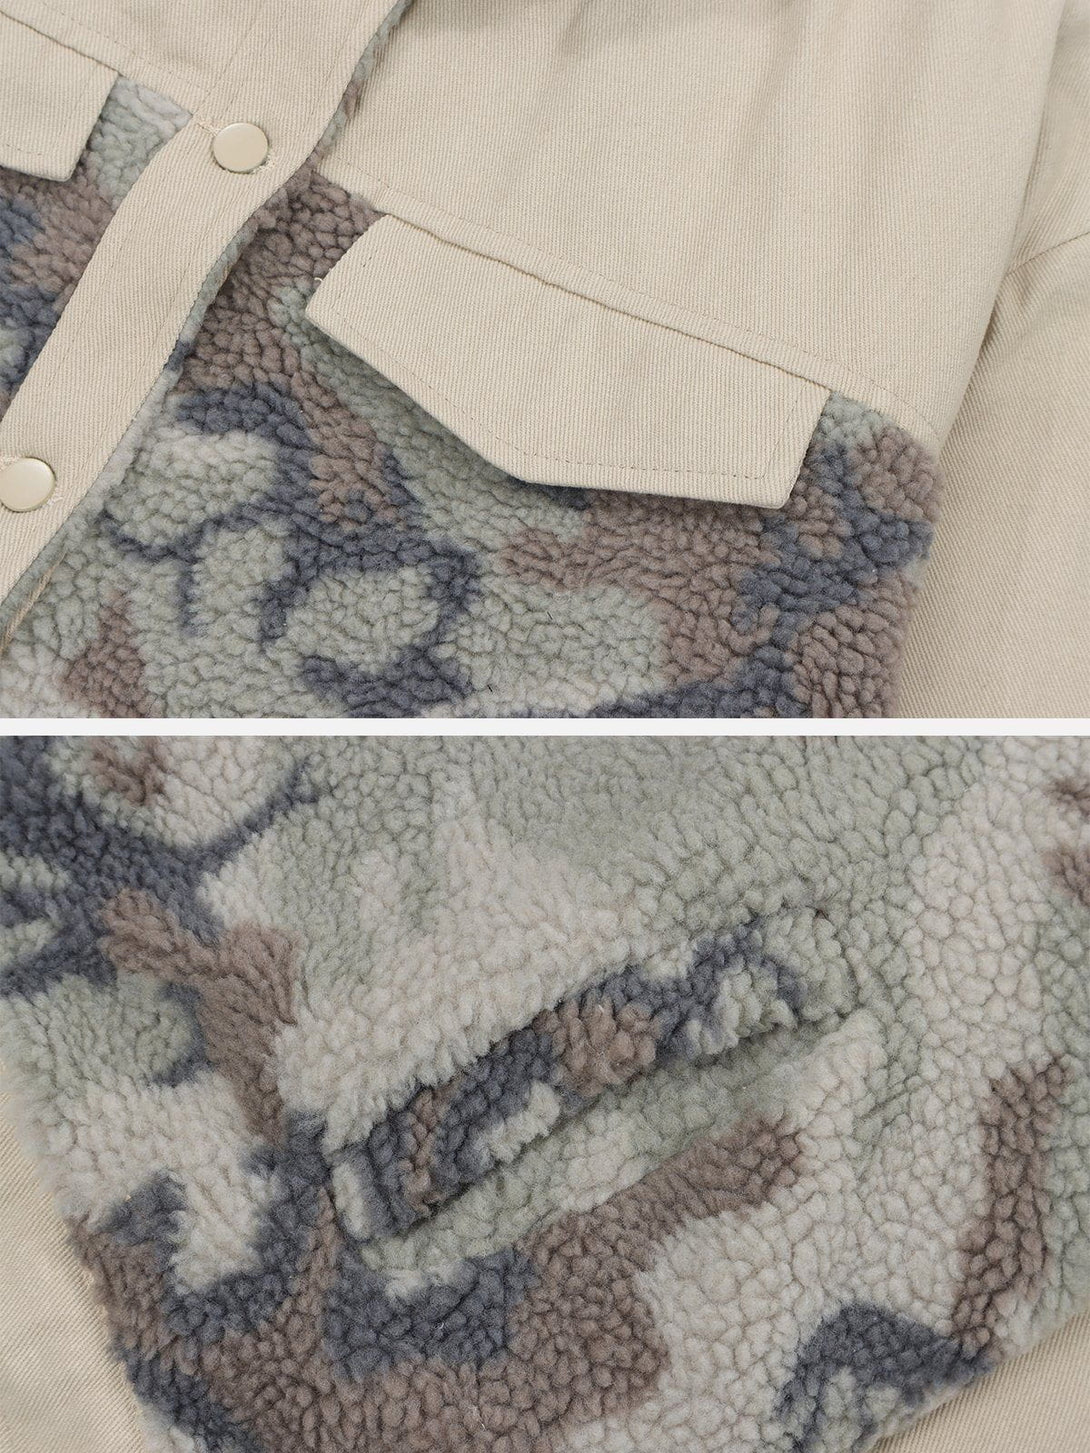 AlanBalen® Camouflage Stitching Sherpa Coat AlanBalen